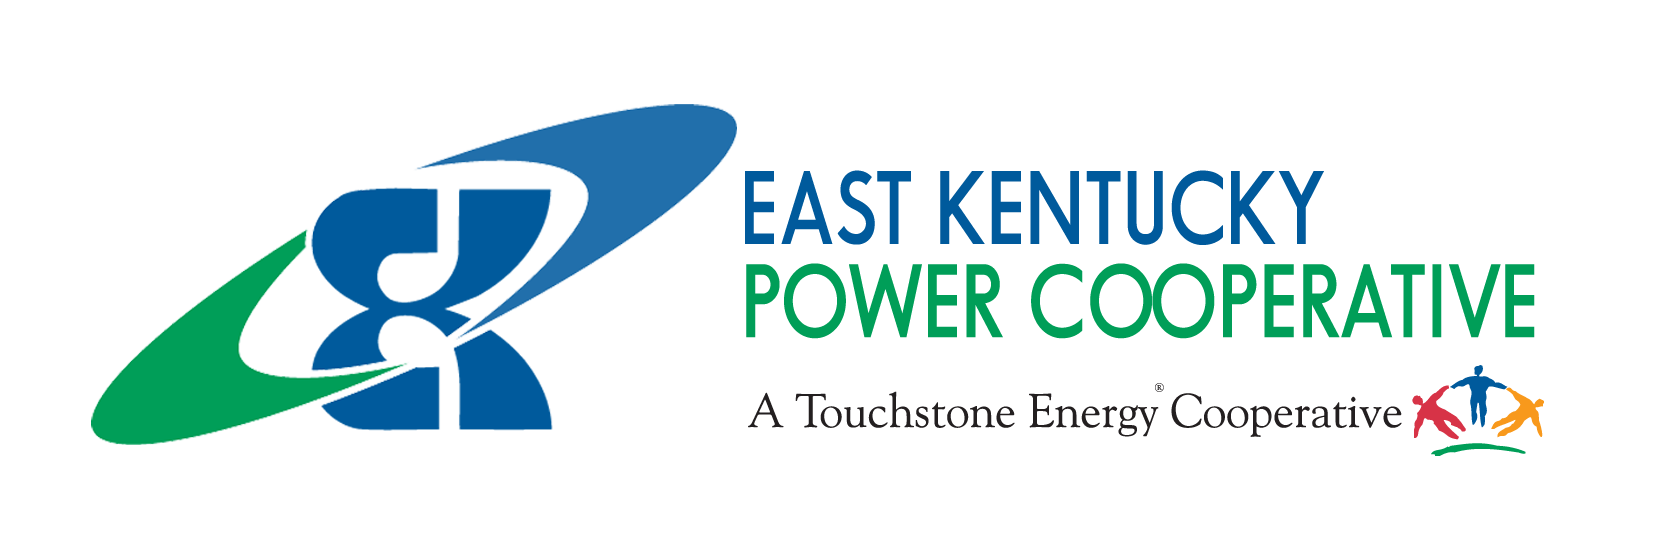 East Kentucky Power